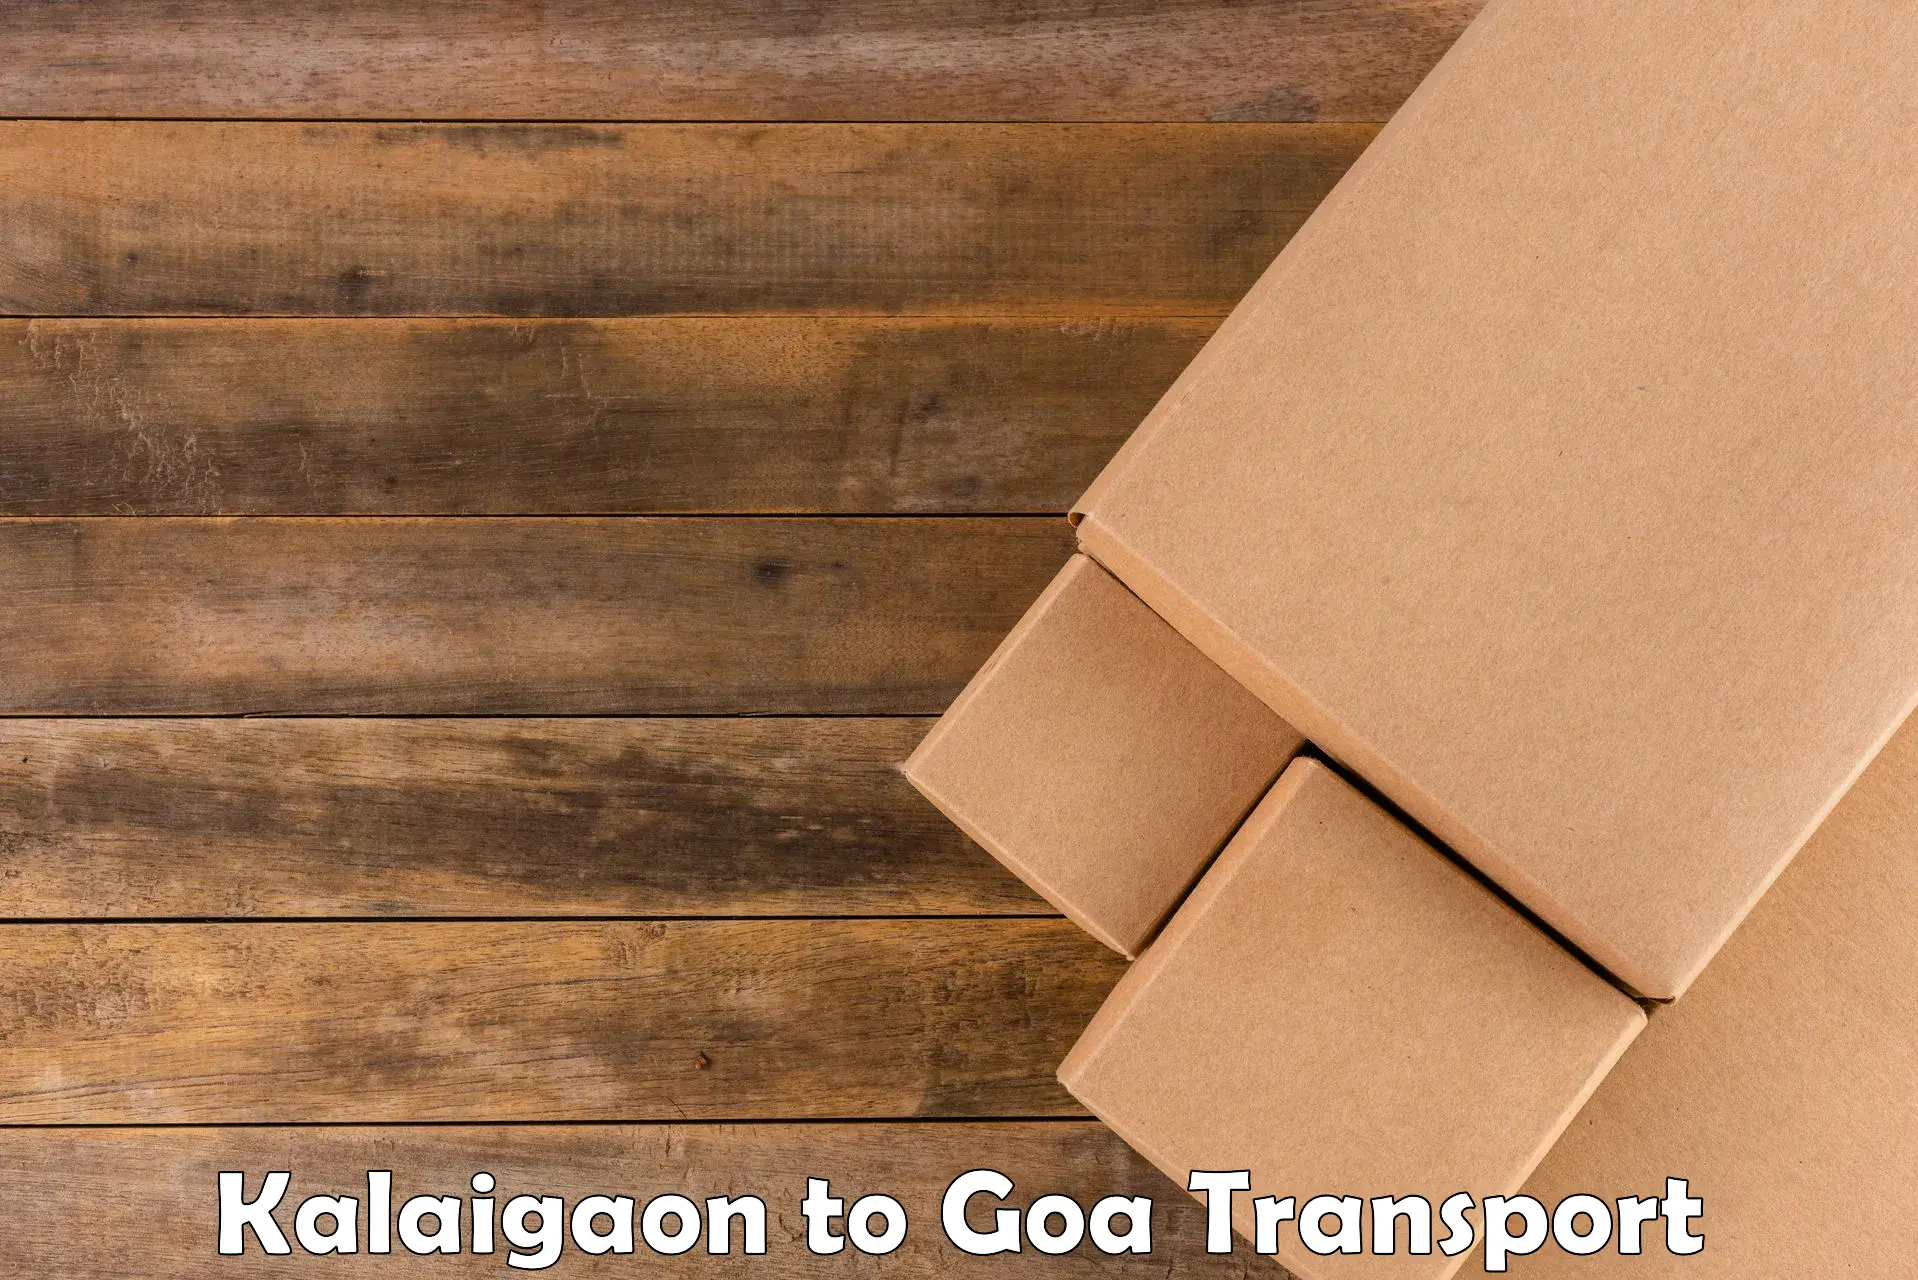 Air freight transport services Kalaigaon to Ponda